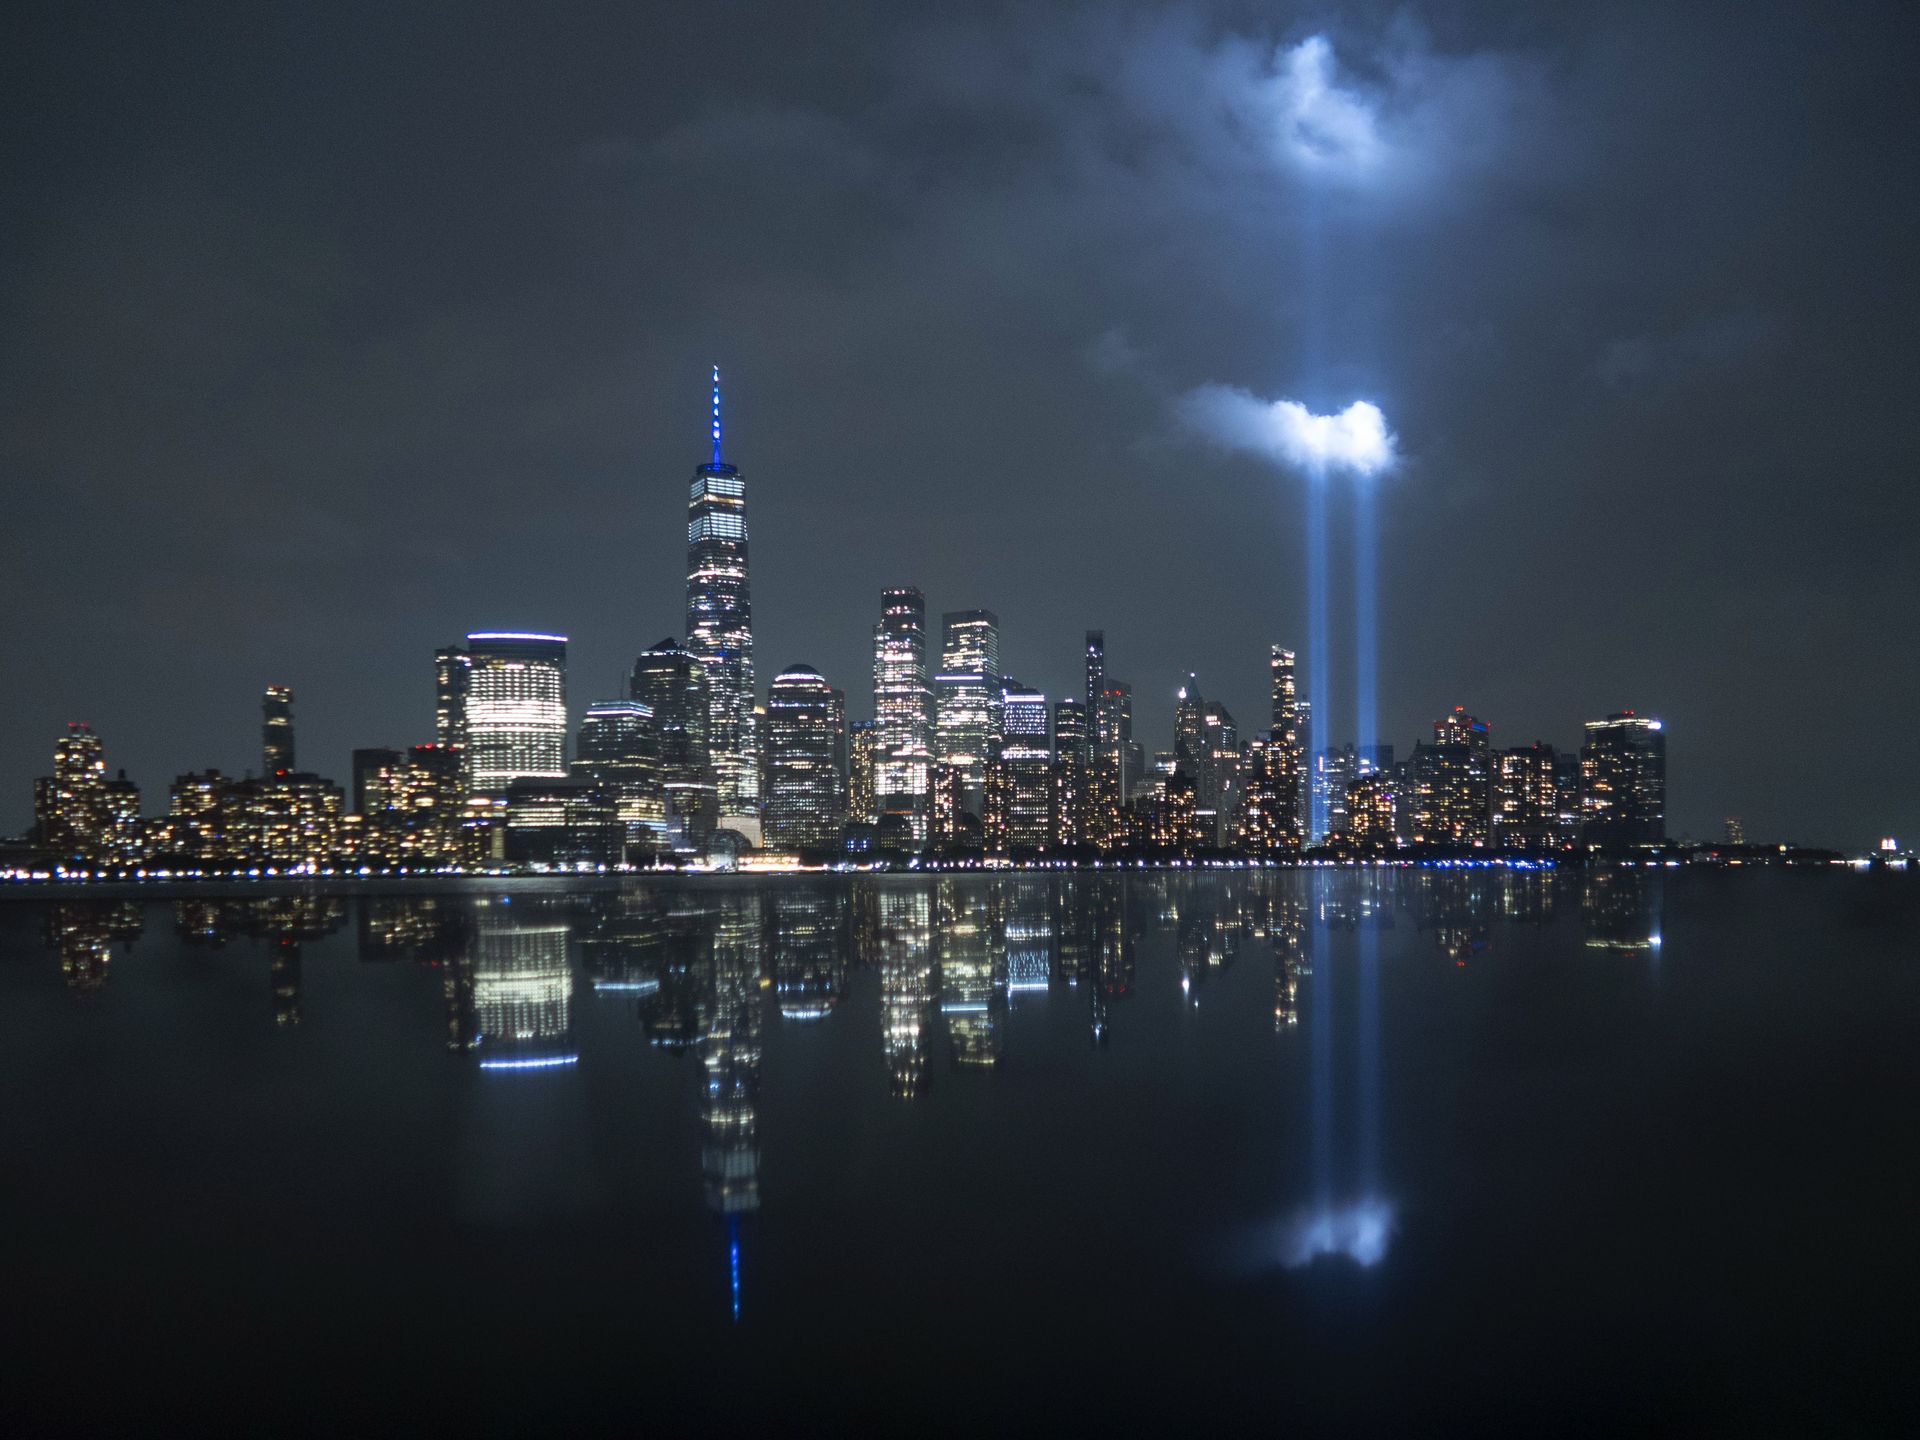 9/11 Memorial in New York 